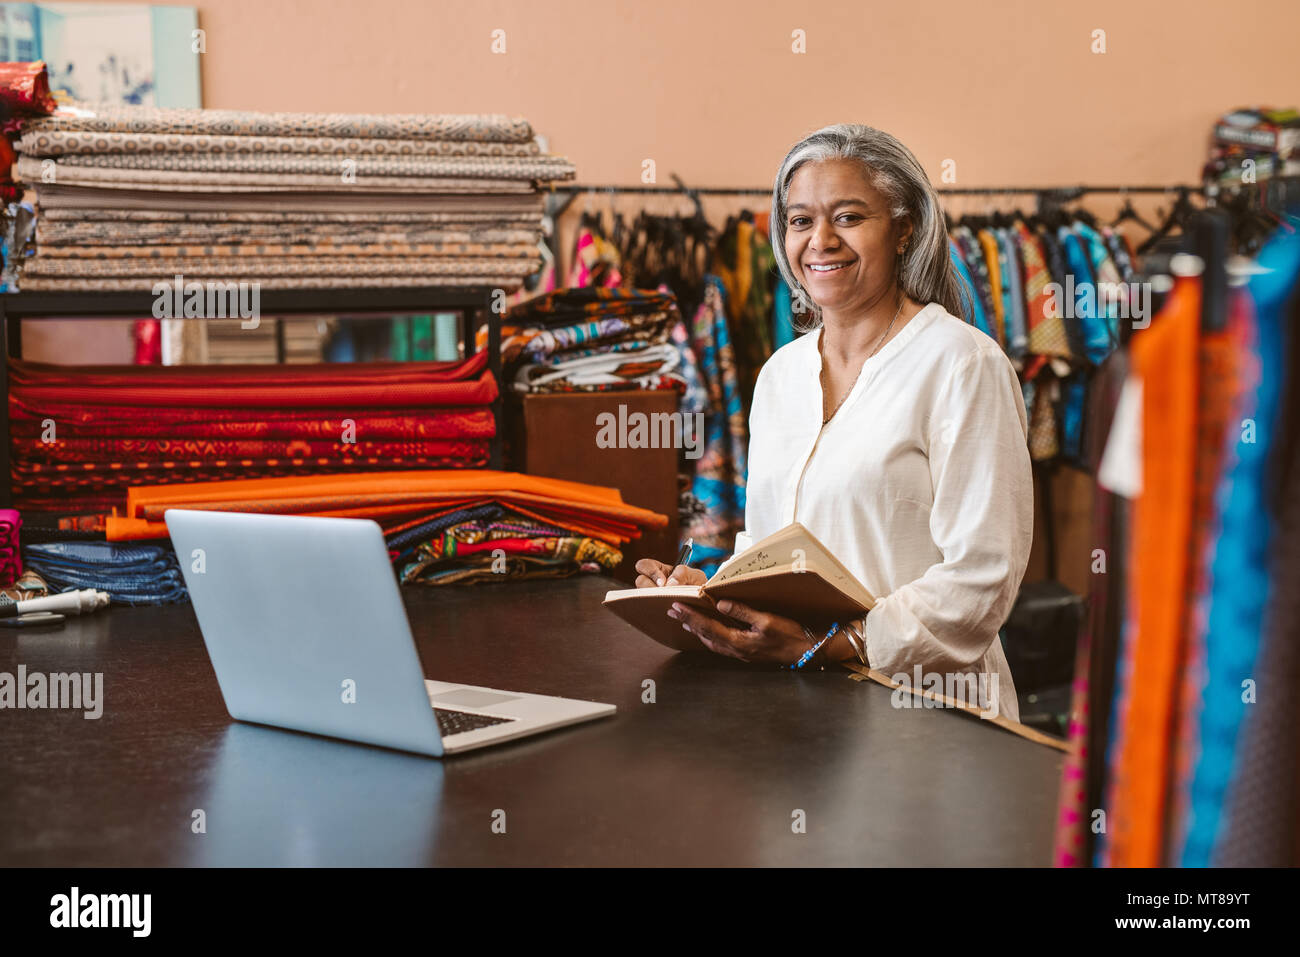 Porträt eines lächelnden Reife fabric Store owner, der an einem Notebook arbeitet und das Schreiben von Notizen bei einem Zähler von bunten Textilien umgeben Stockfoto